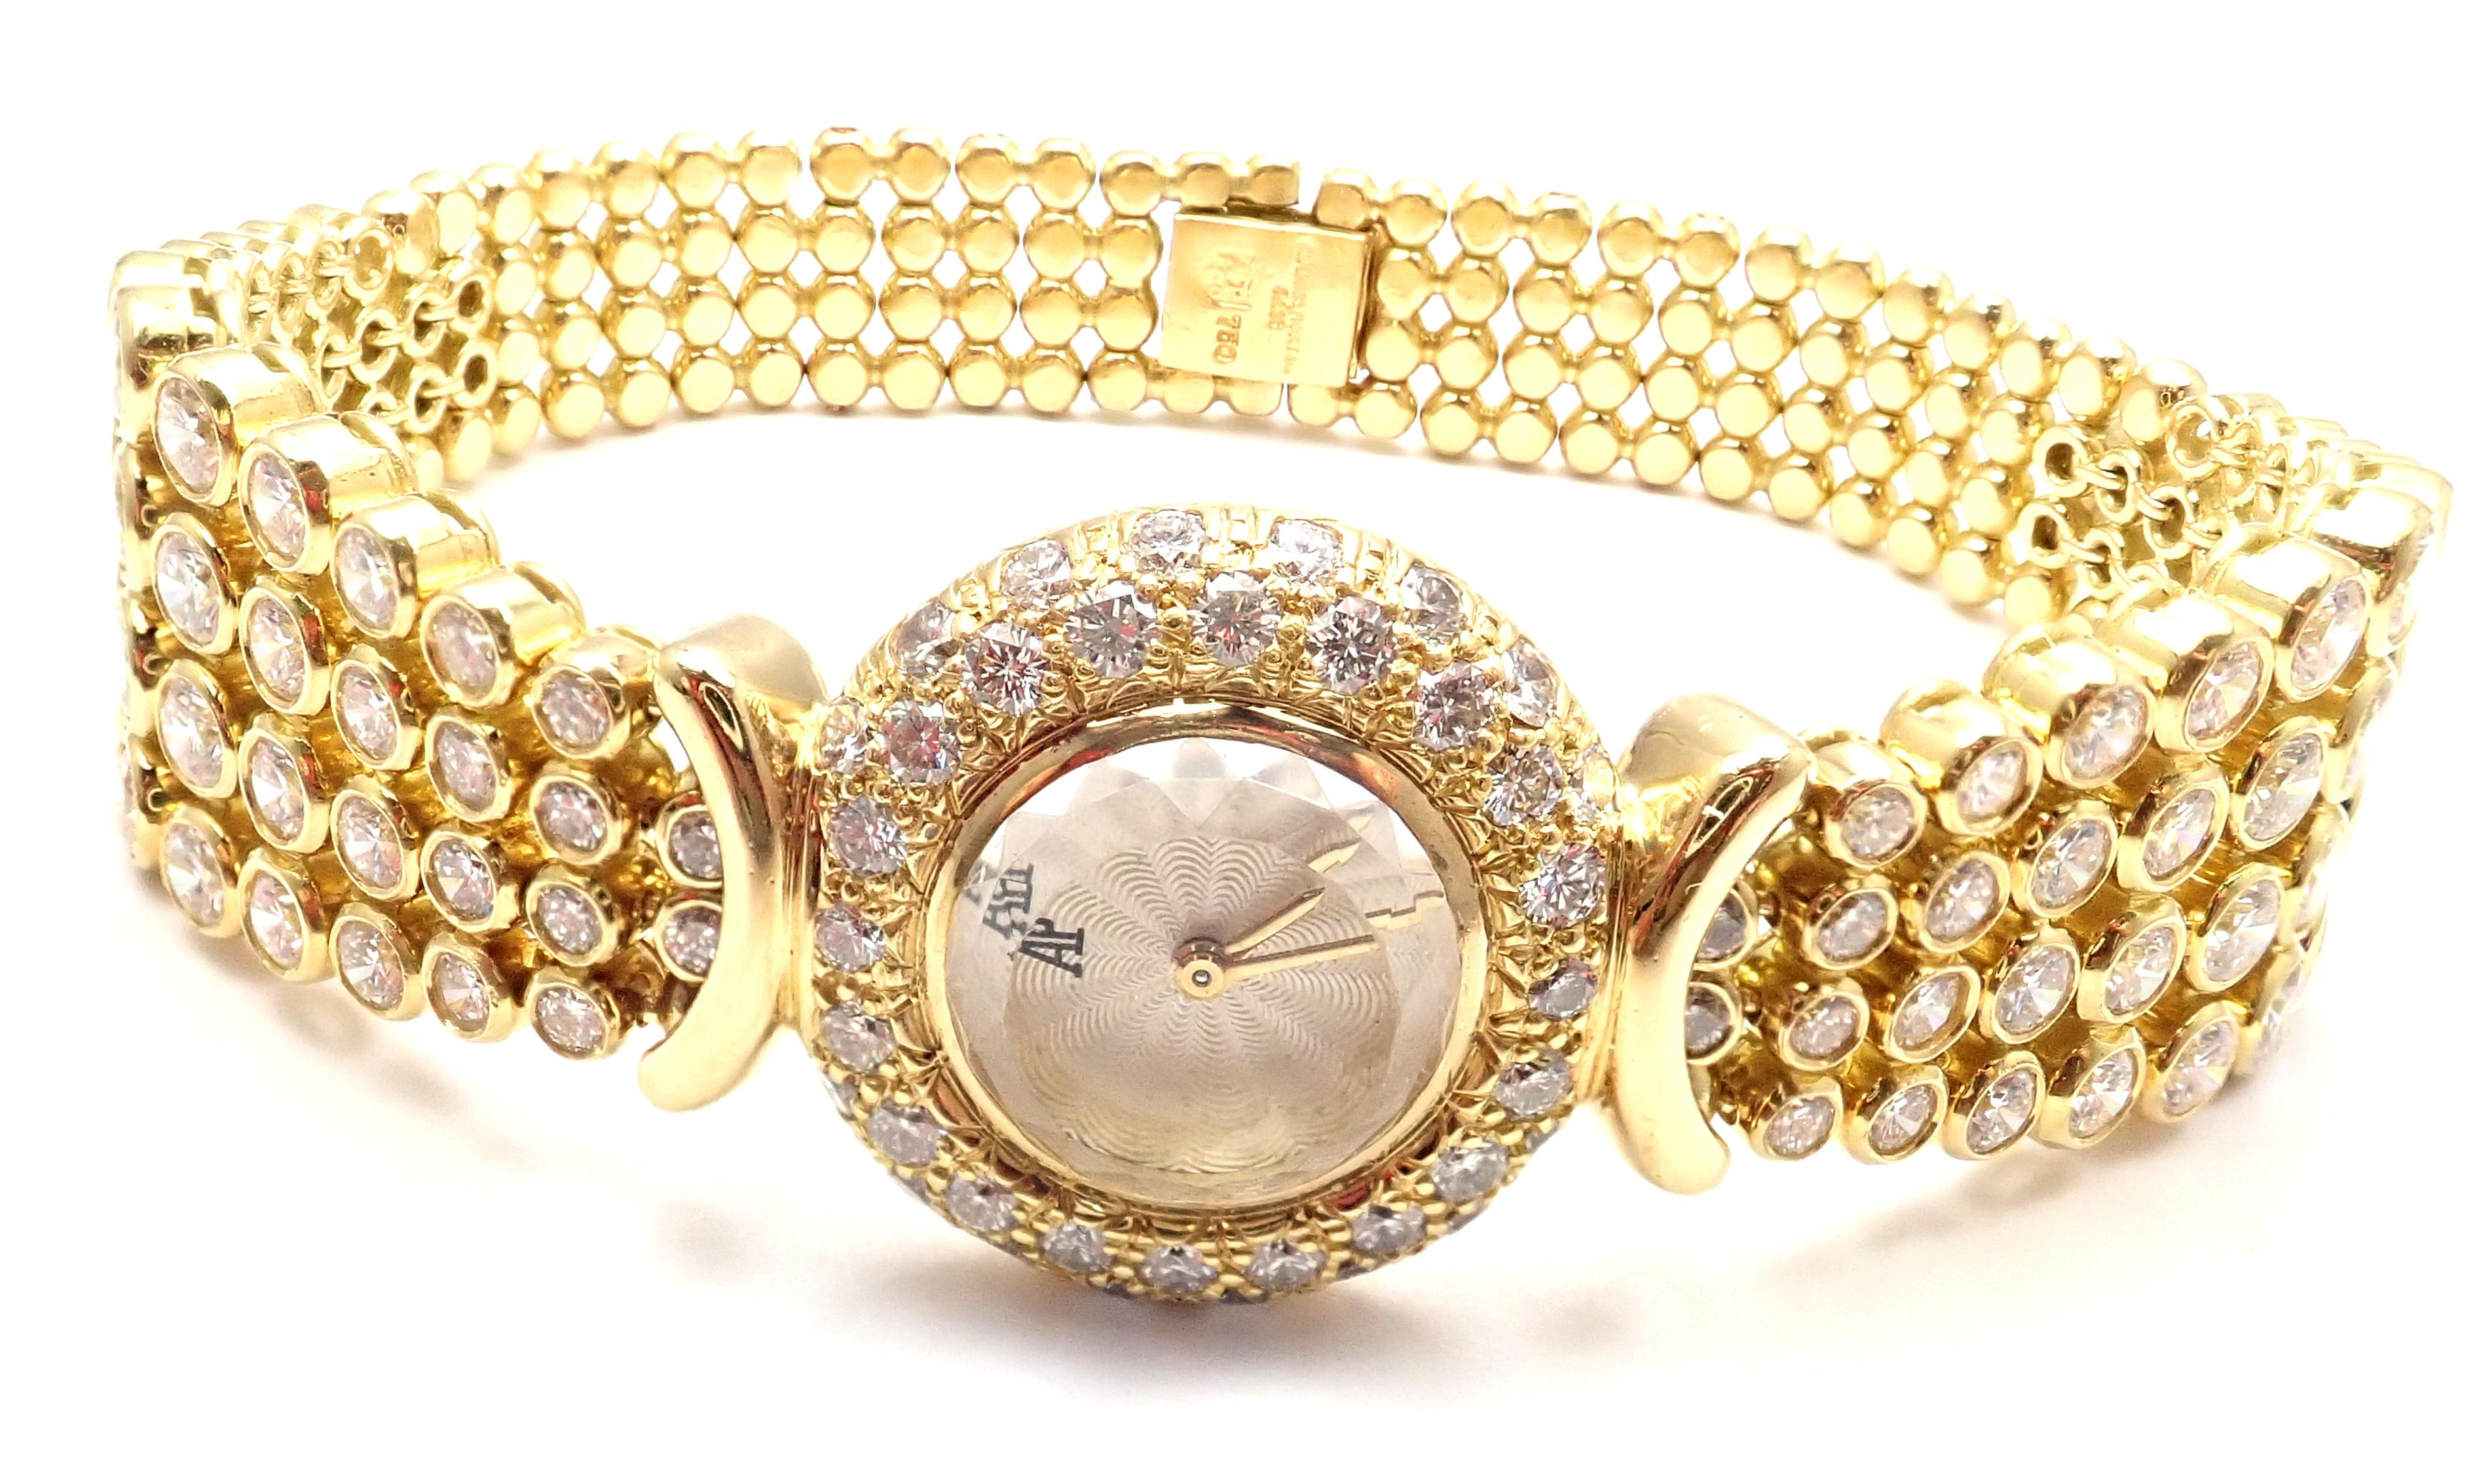 montre-bracelet vintage pour dame en or jaune 18k et diamants, signée Audemars Piguet. 
Avec136 diamants ronds de taille brillante de pureté VS1 et de couleur E. Poids total d'environ 8 ct
Cette montre est livrée avec une boîte Audemars